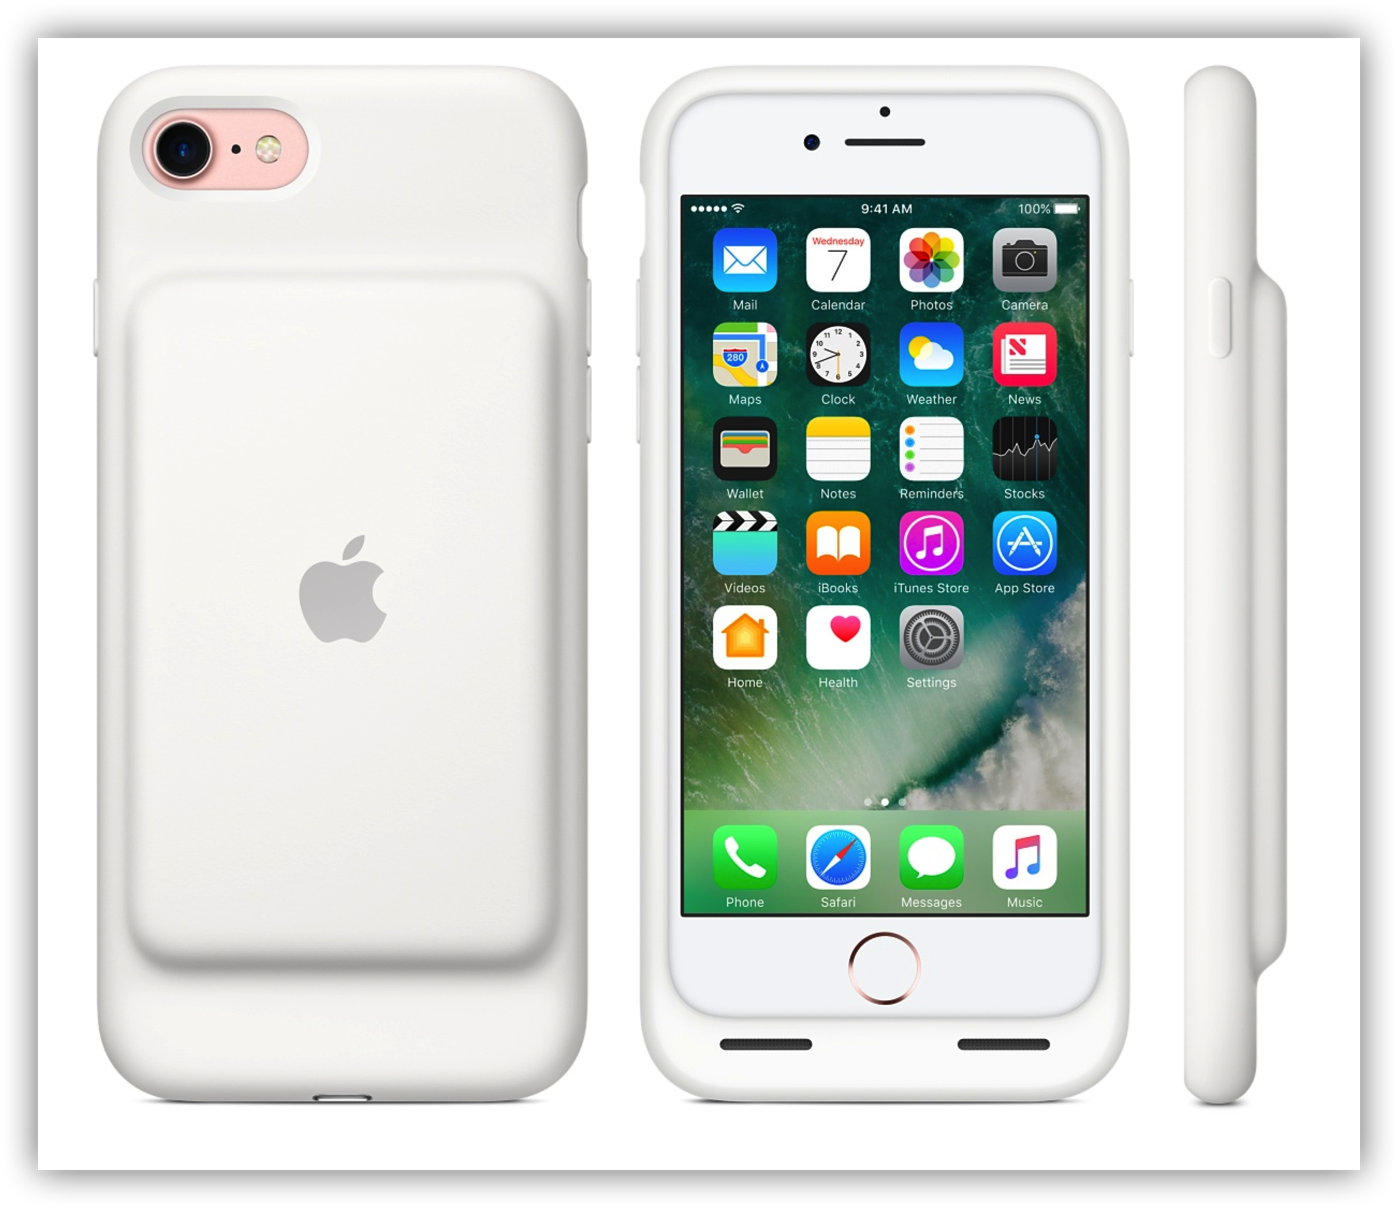 [iPhone]新型iPhone 7 にiPhone 6s 用のSmart Battery Caseを装着してみたよ